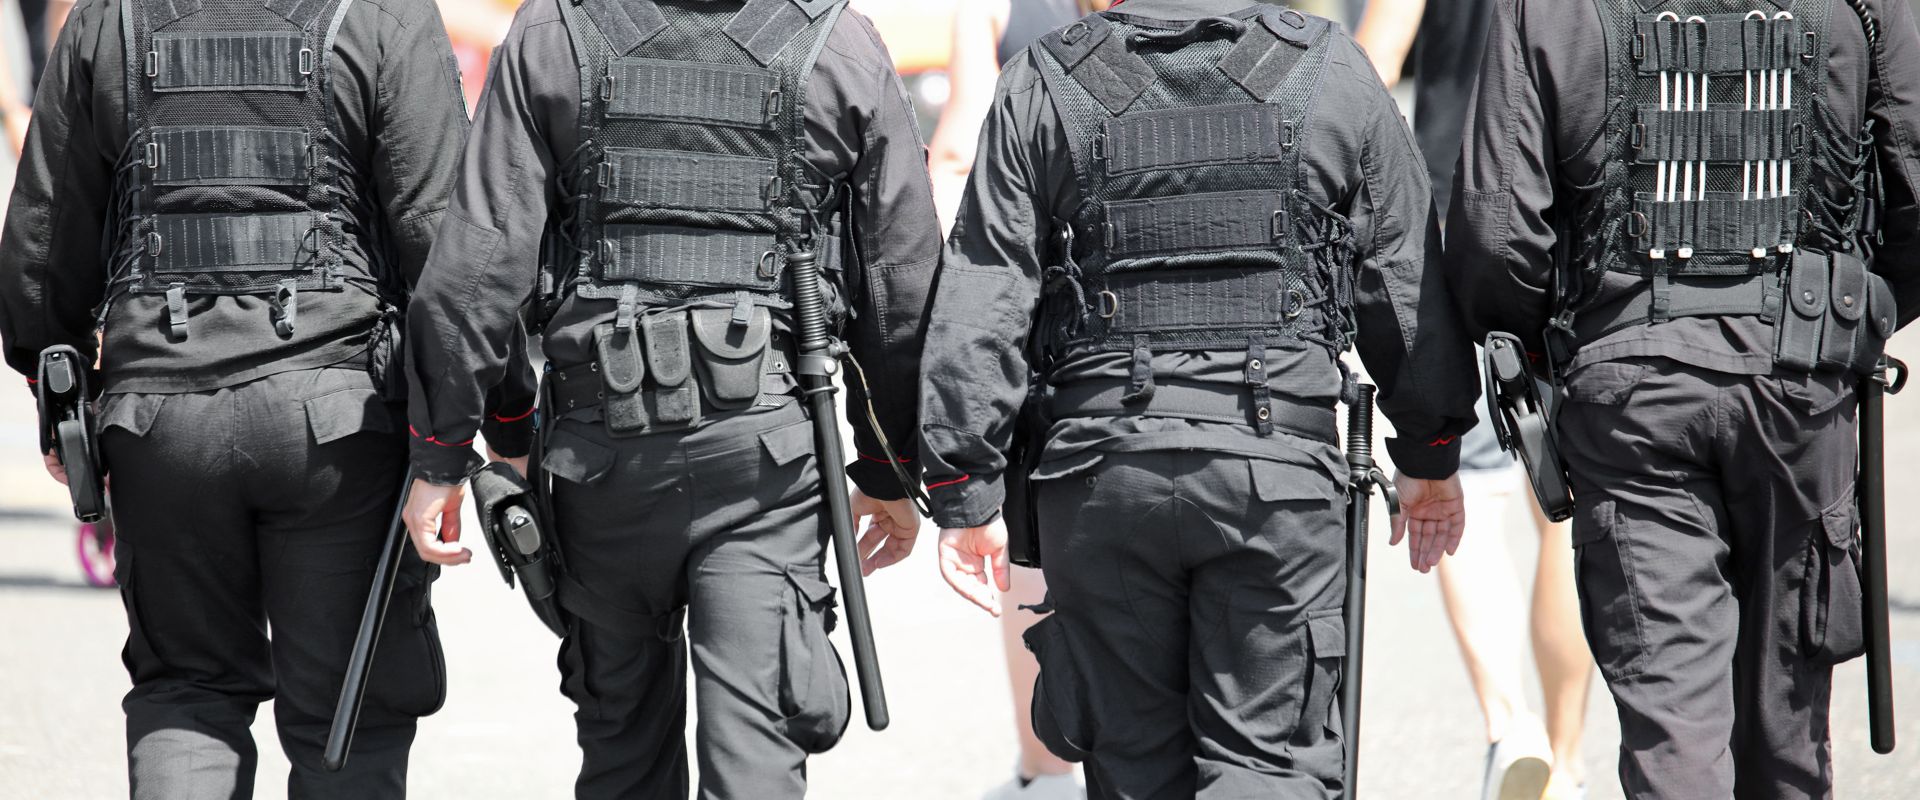 Law enforcement walking in protective gear